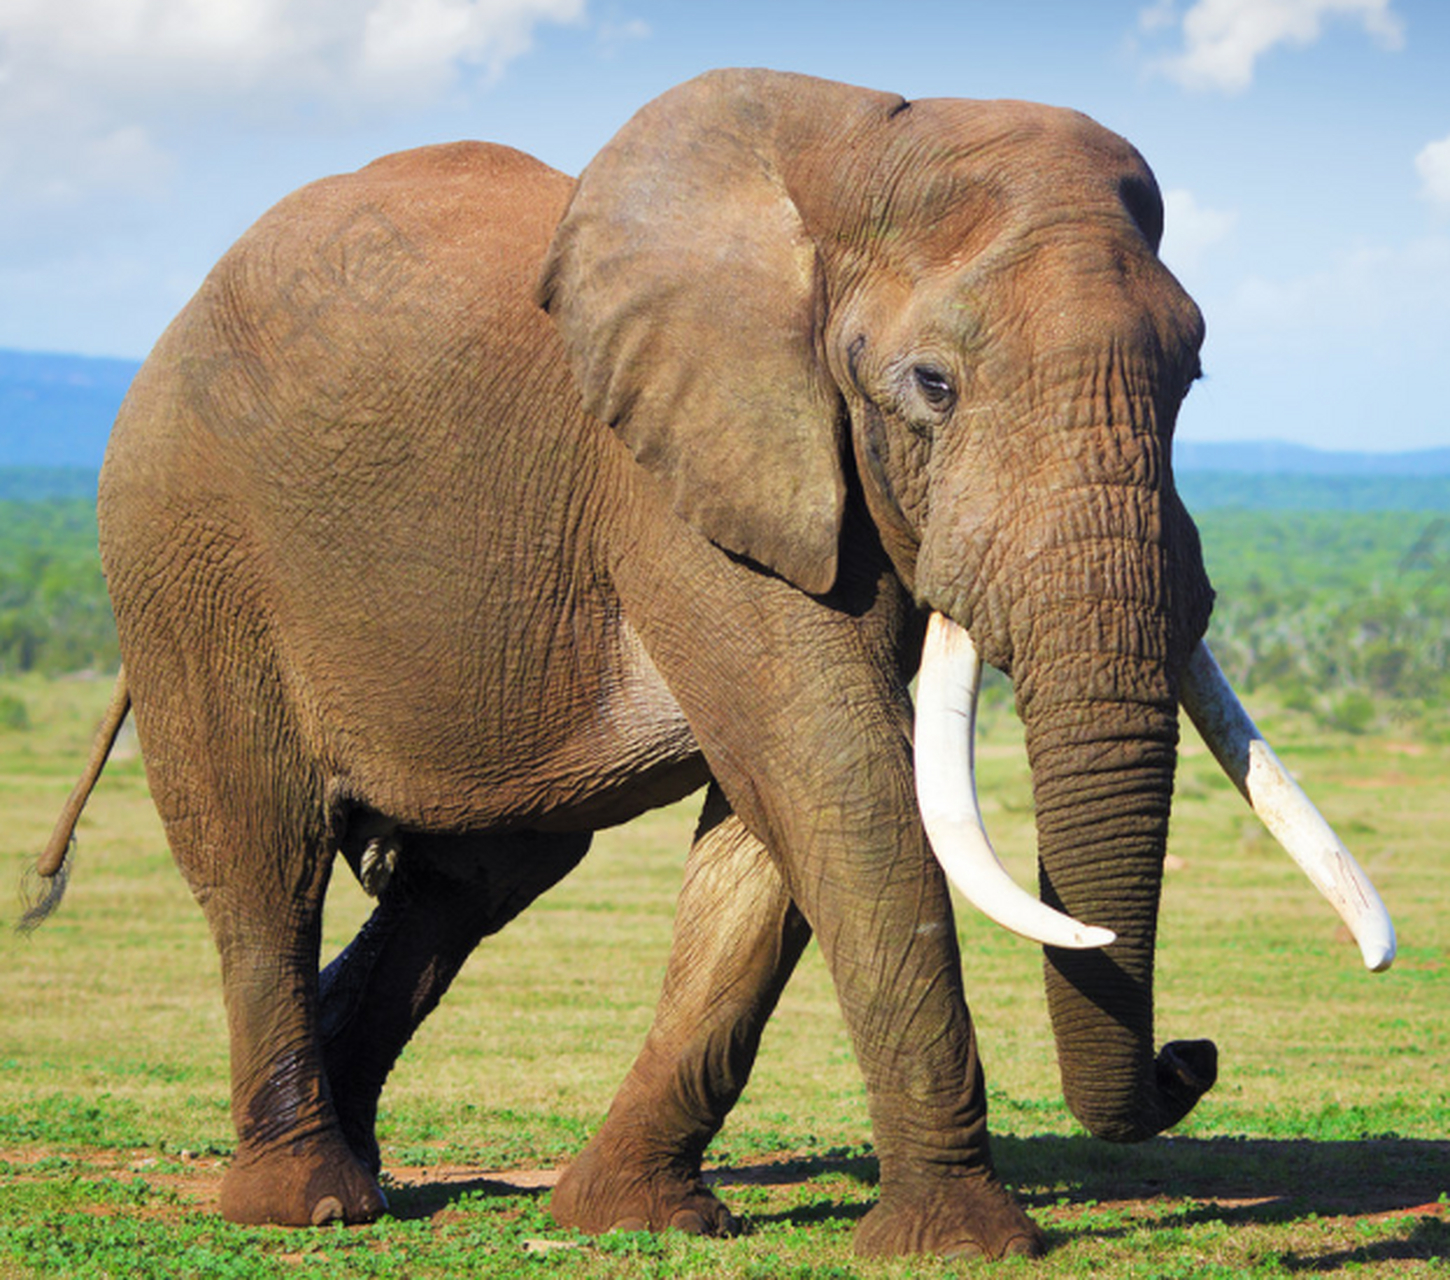 地球上最凶猛的动物 大象(非洲象做代表)非洲象体躯庞大而笨重,是陆地